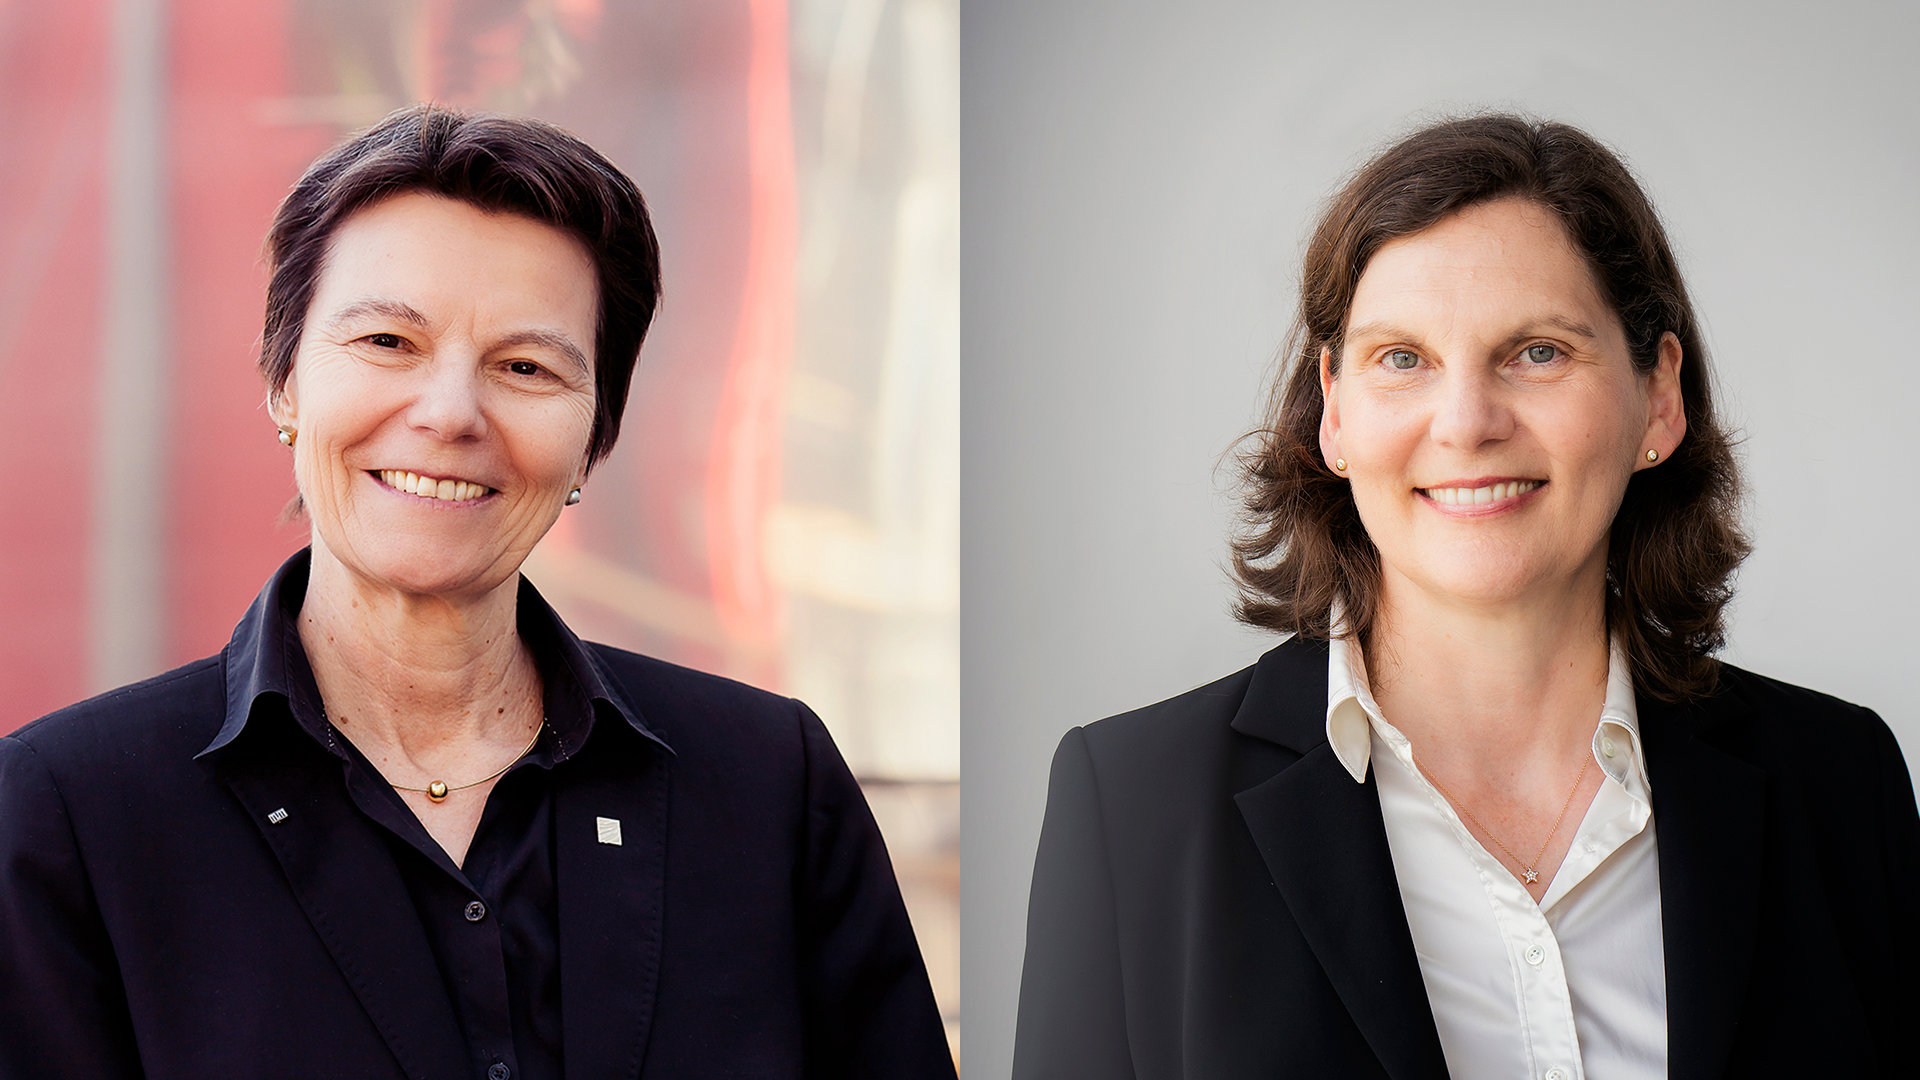 Porträts der beiden Preisträgerinnen des Preises für gute Lehre, Claudia Eckert und Friederike Schmidt-Graf